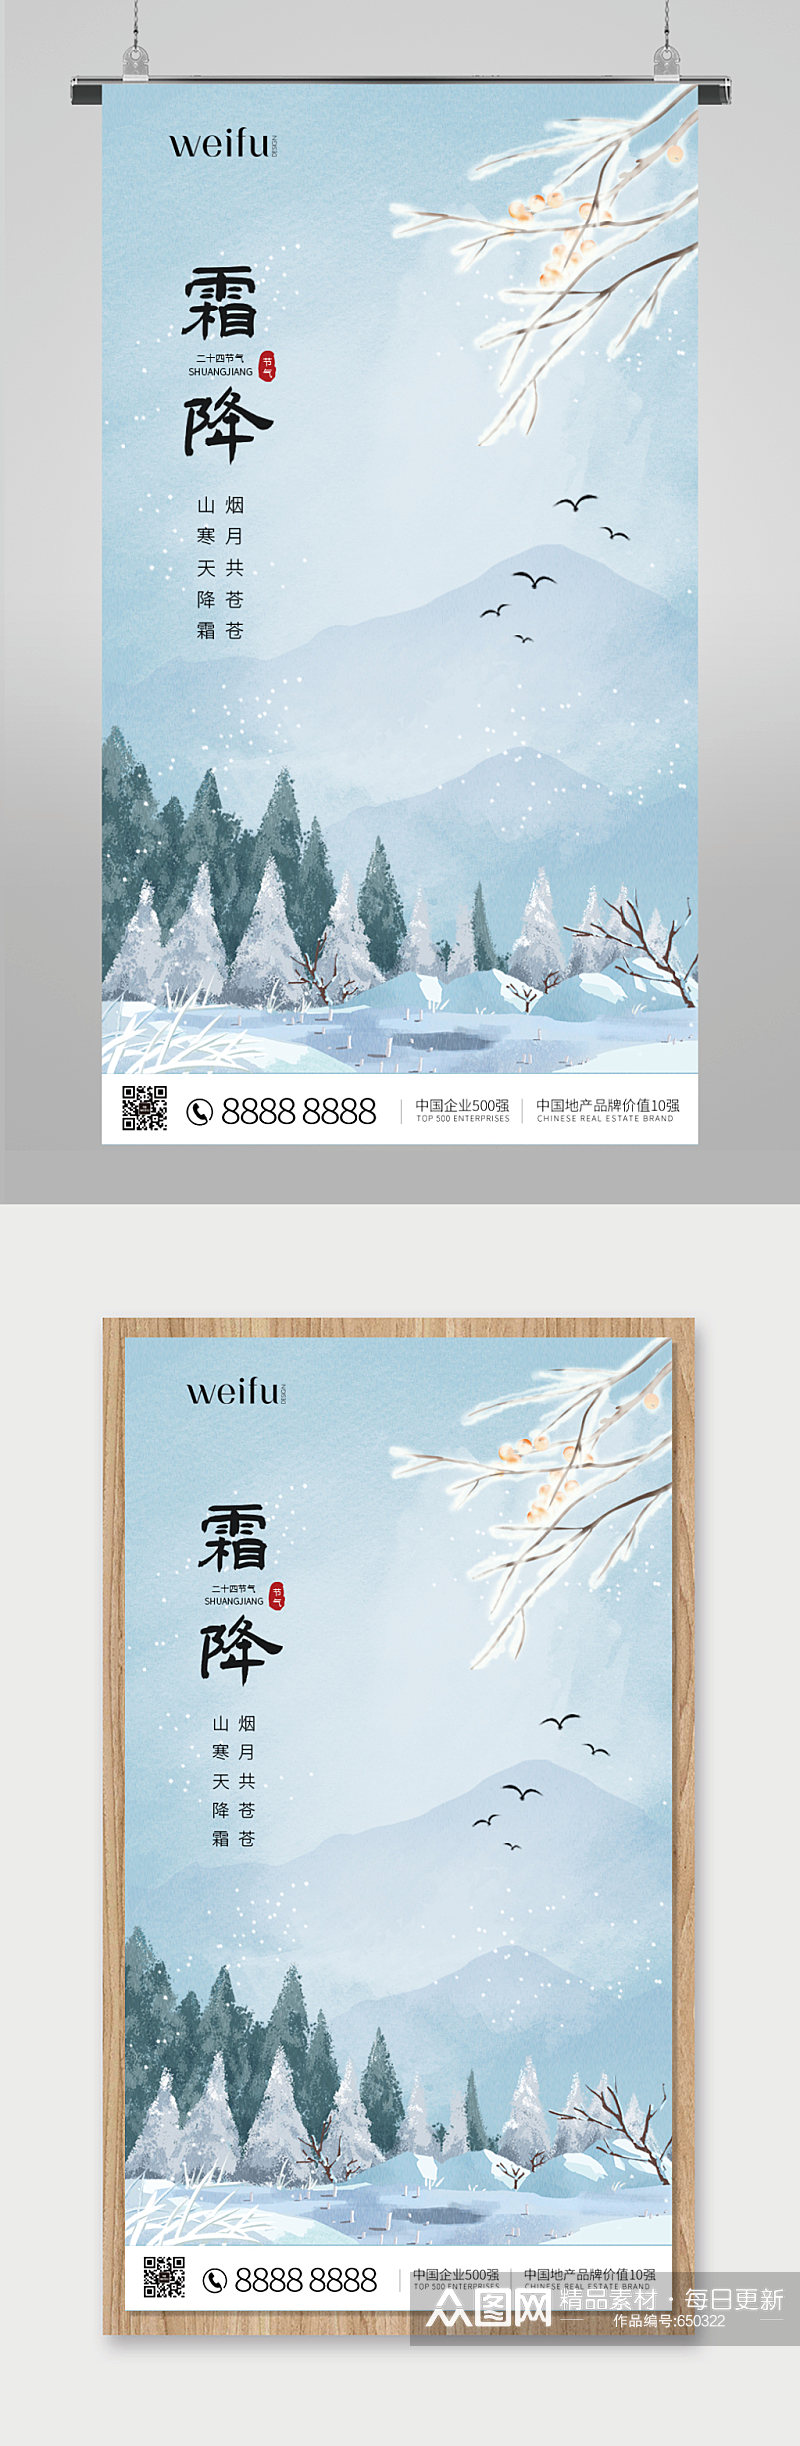 中国传统节气霜降海报素材